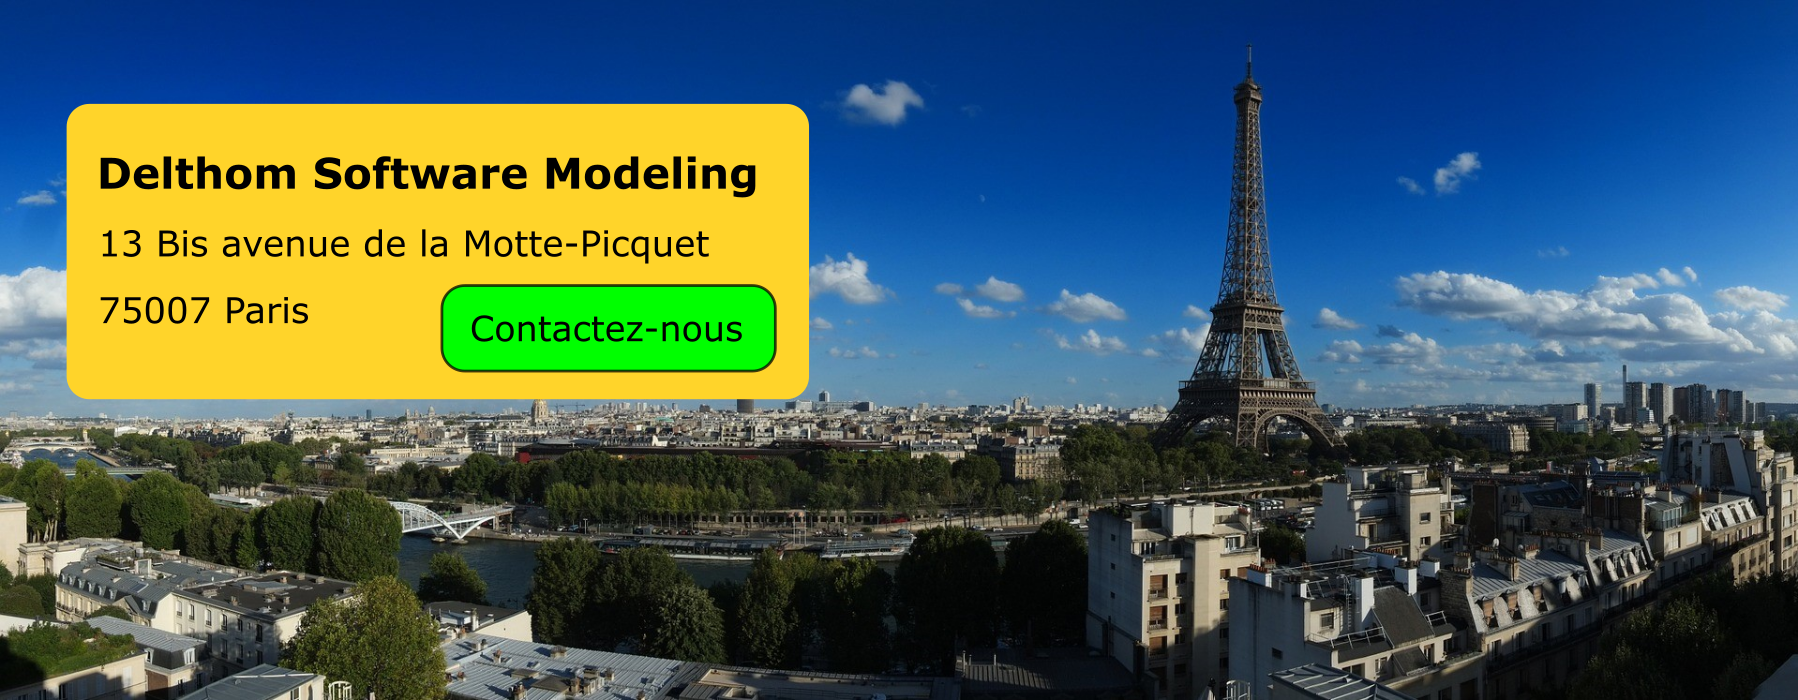 Delthom Software Modeling, Paris